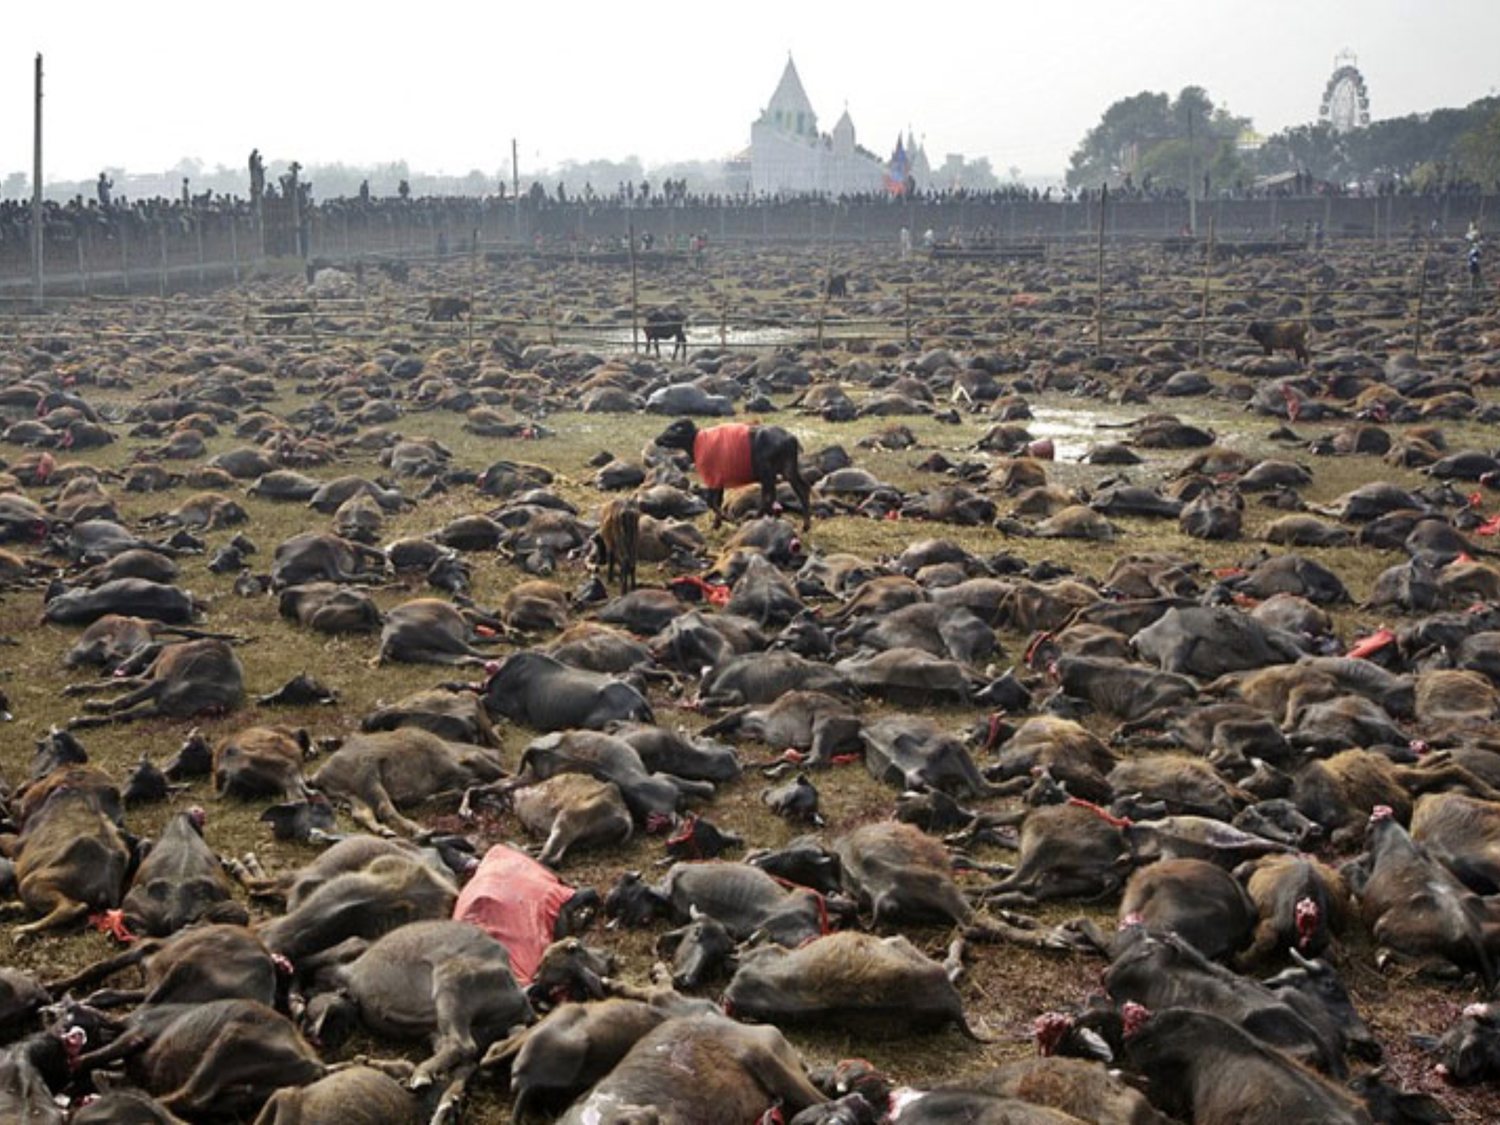 Así es la mayor matanza de animales del mundo en Nepal: 300.000 animales son degollados